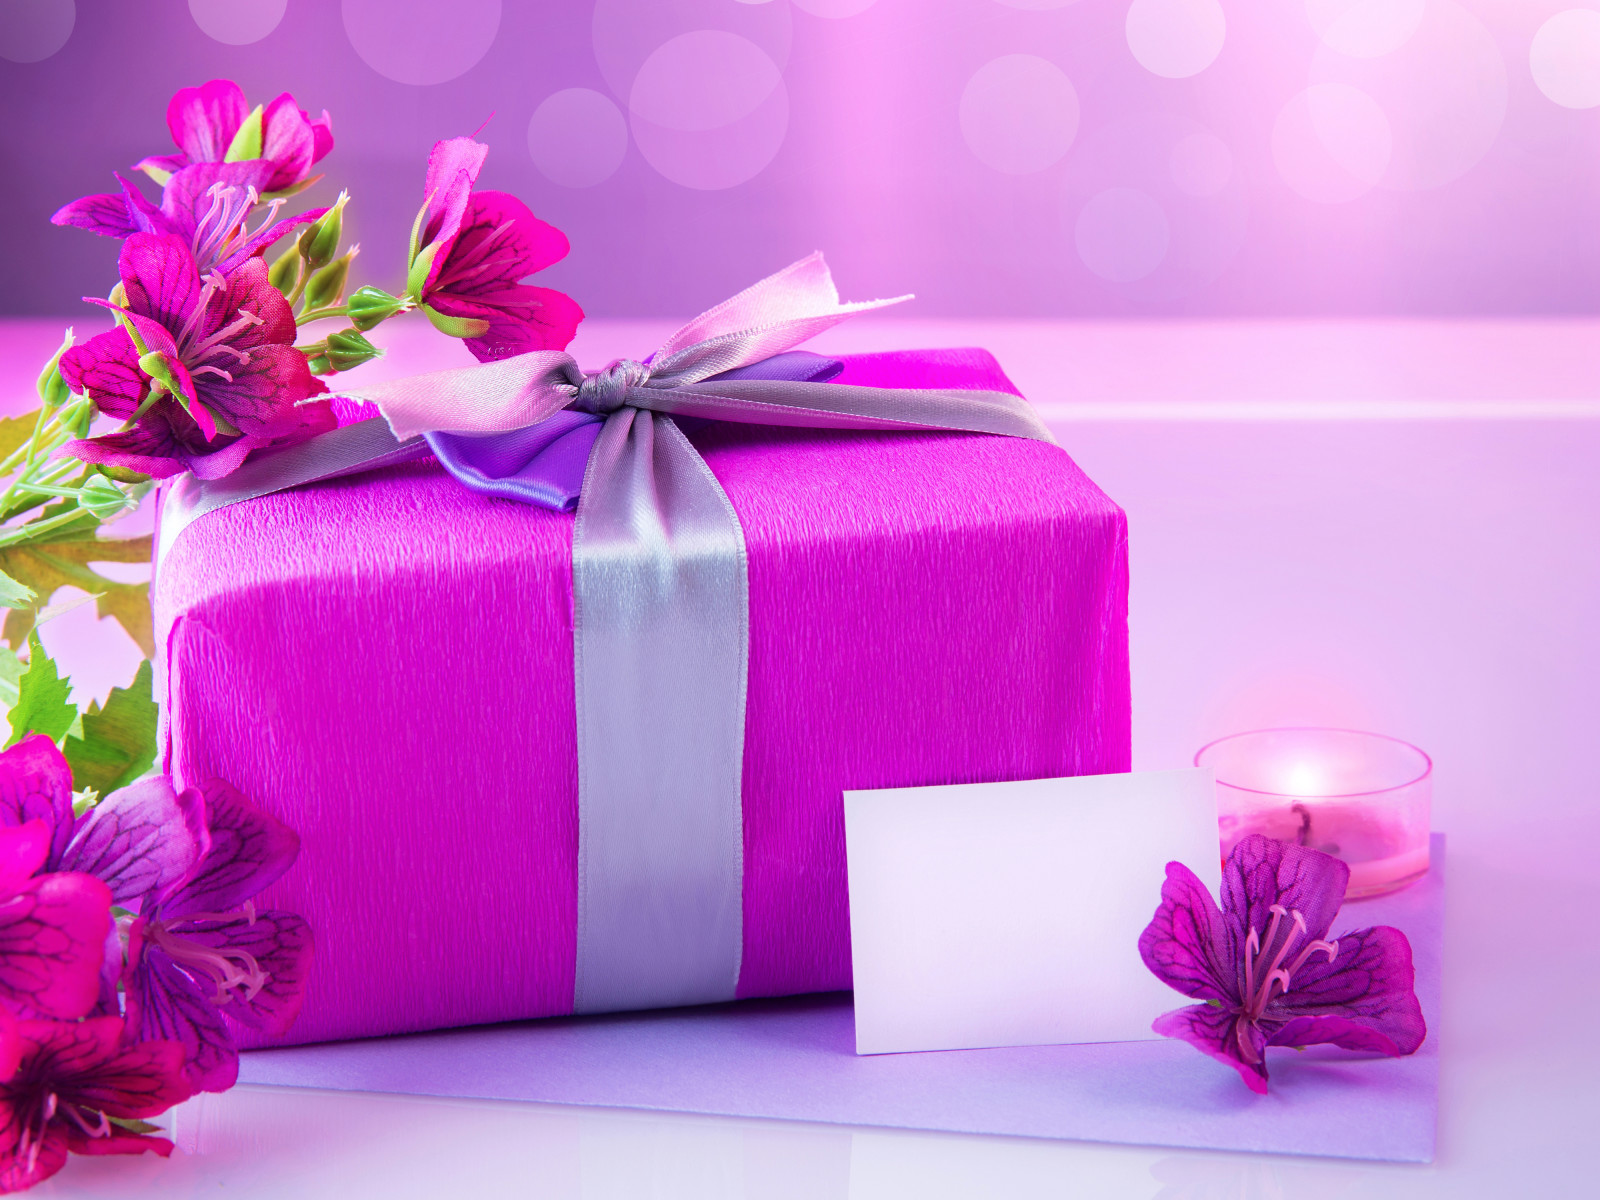 quà tặng, những món quà, bông hoa, nến, alstroemeria